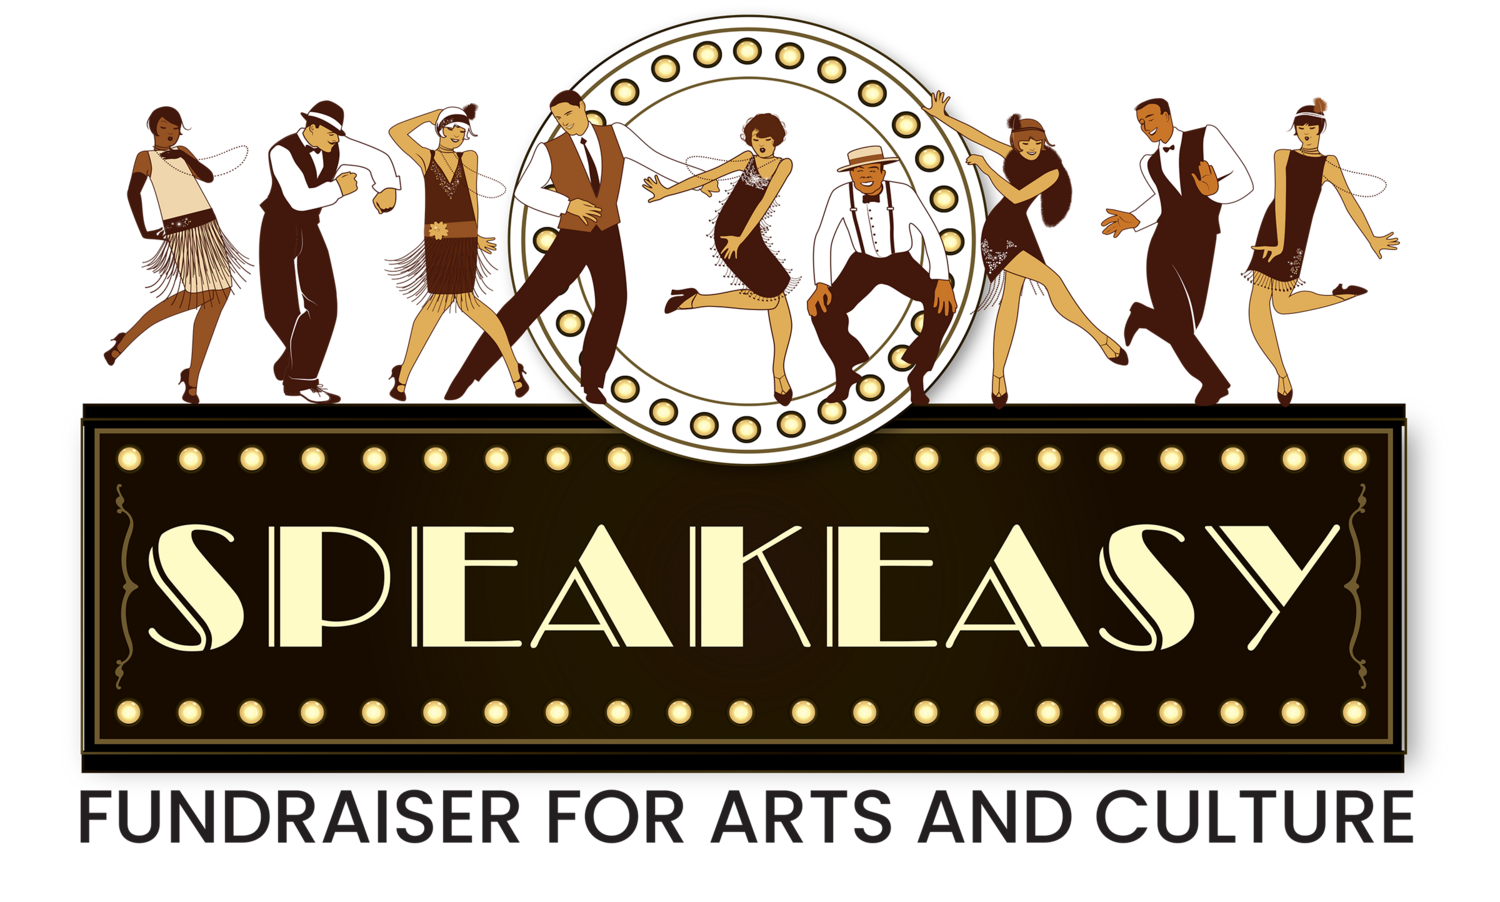 Speakeasy Fundraising Event